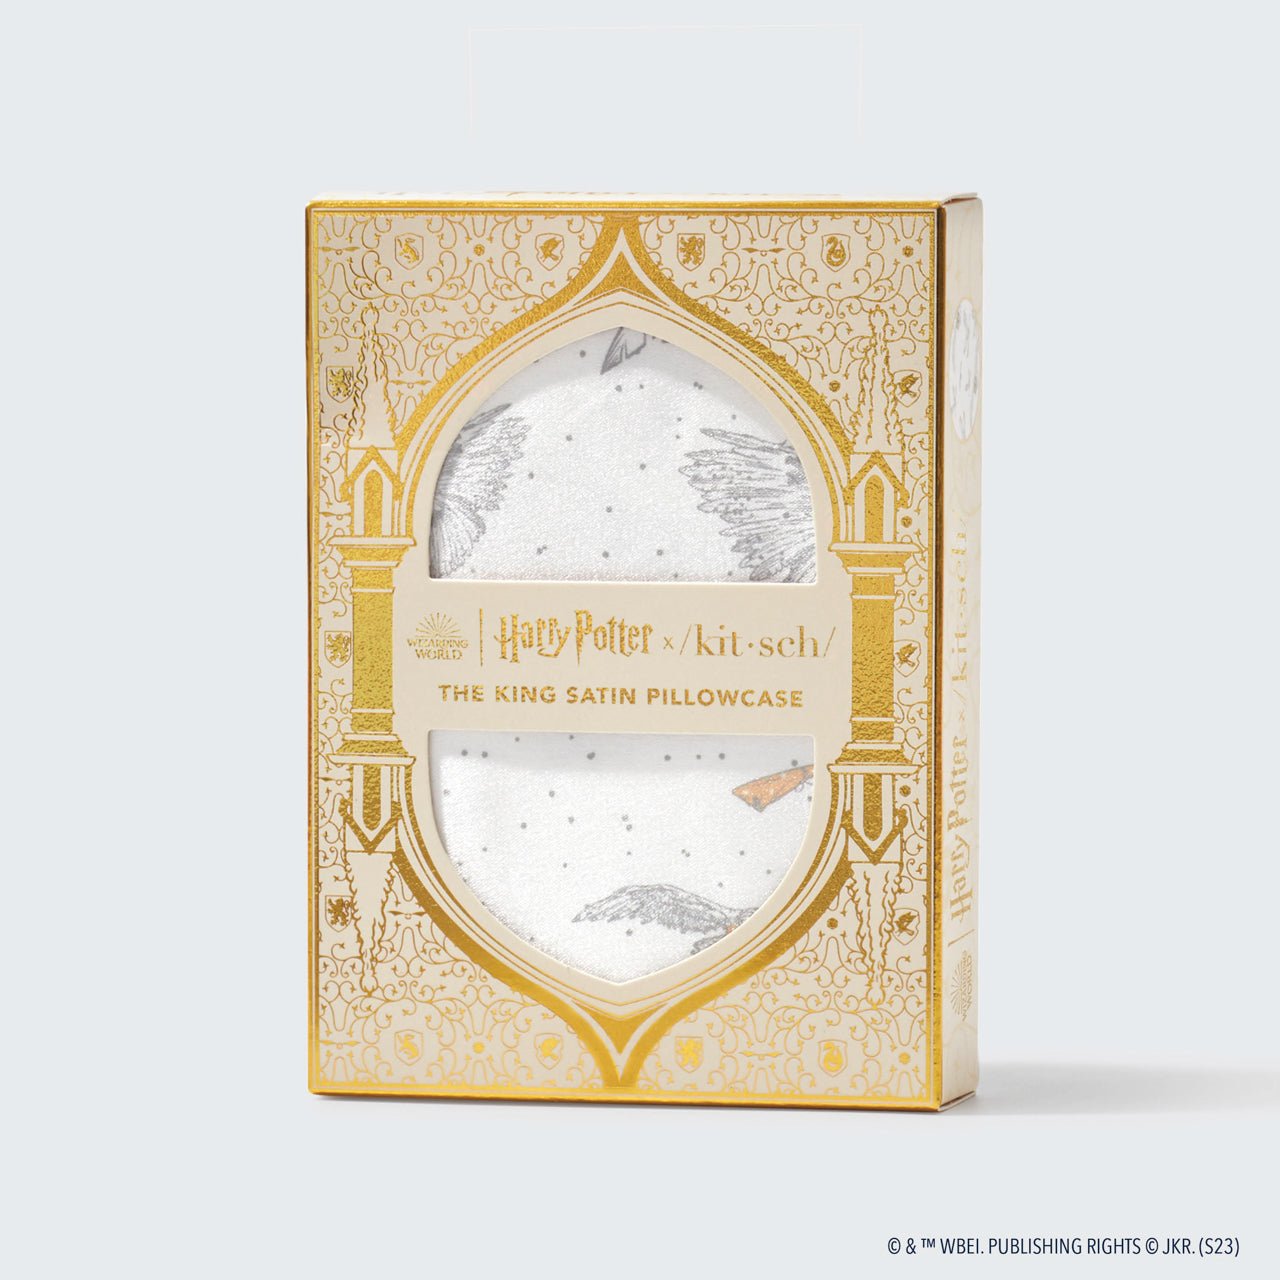 Pacchetto da collezione Harry Potter x Kitsch King